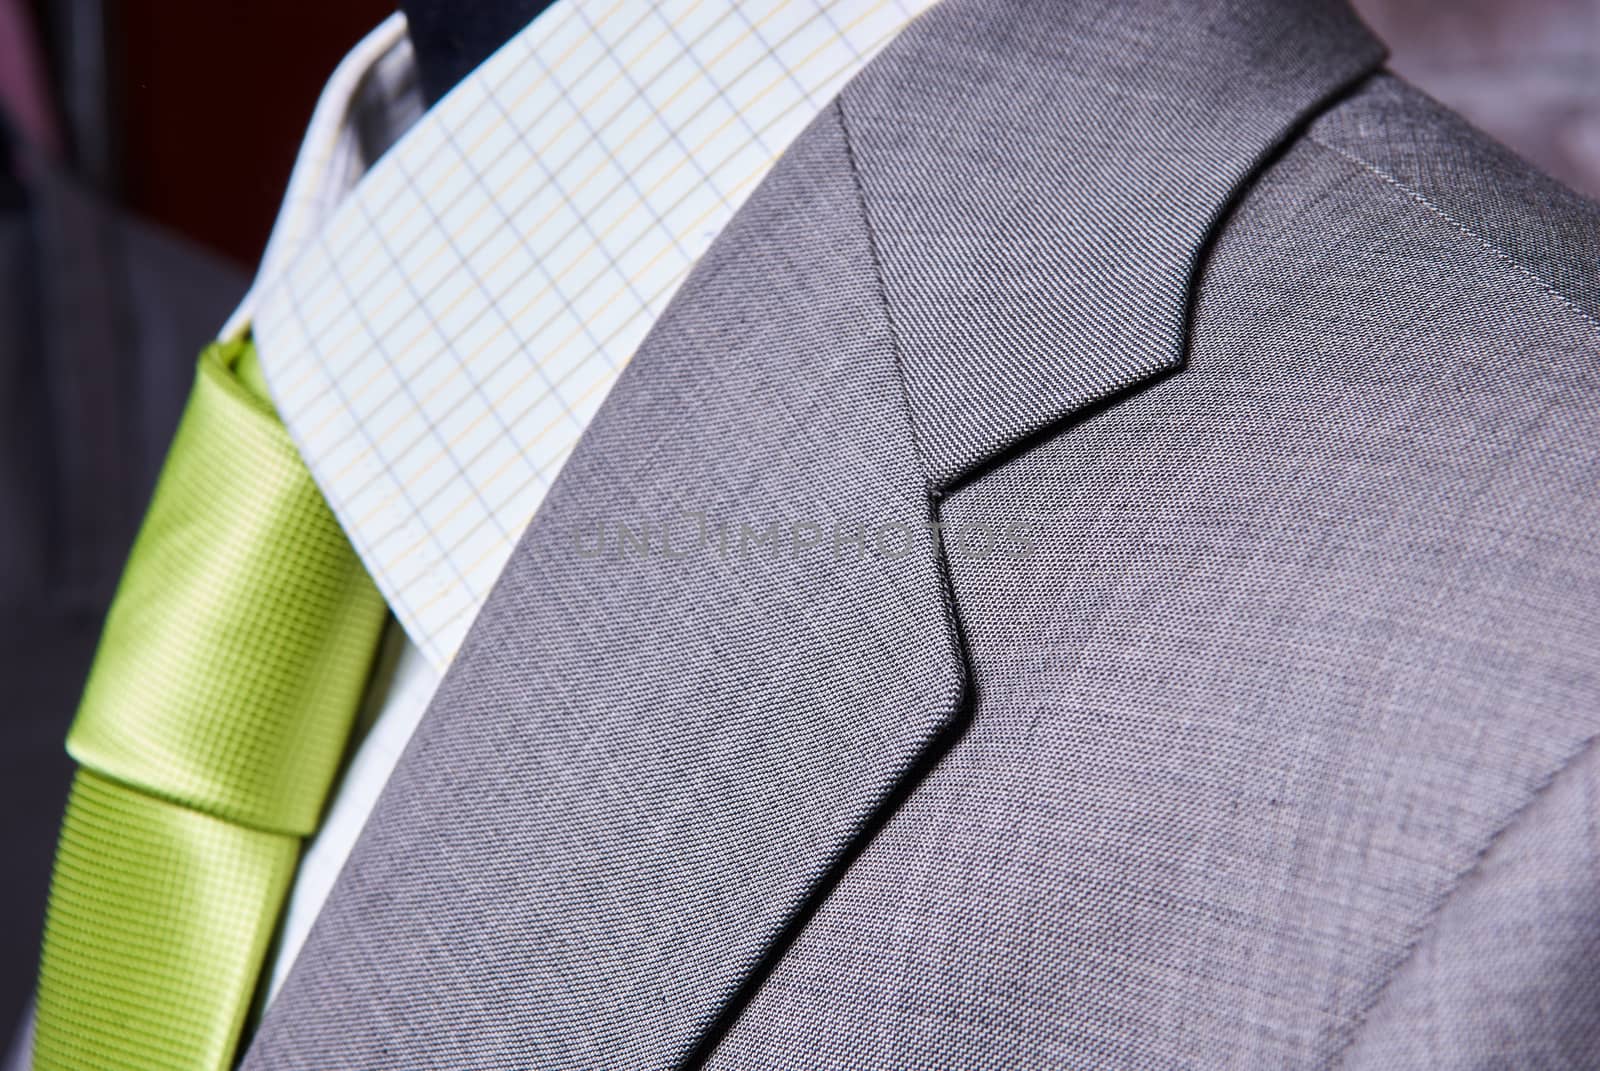 business suit closeup. Suit Texture Close Up